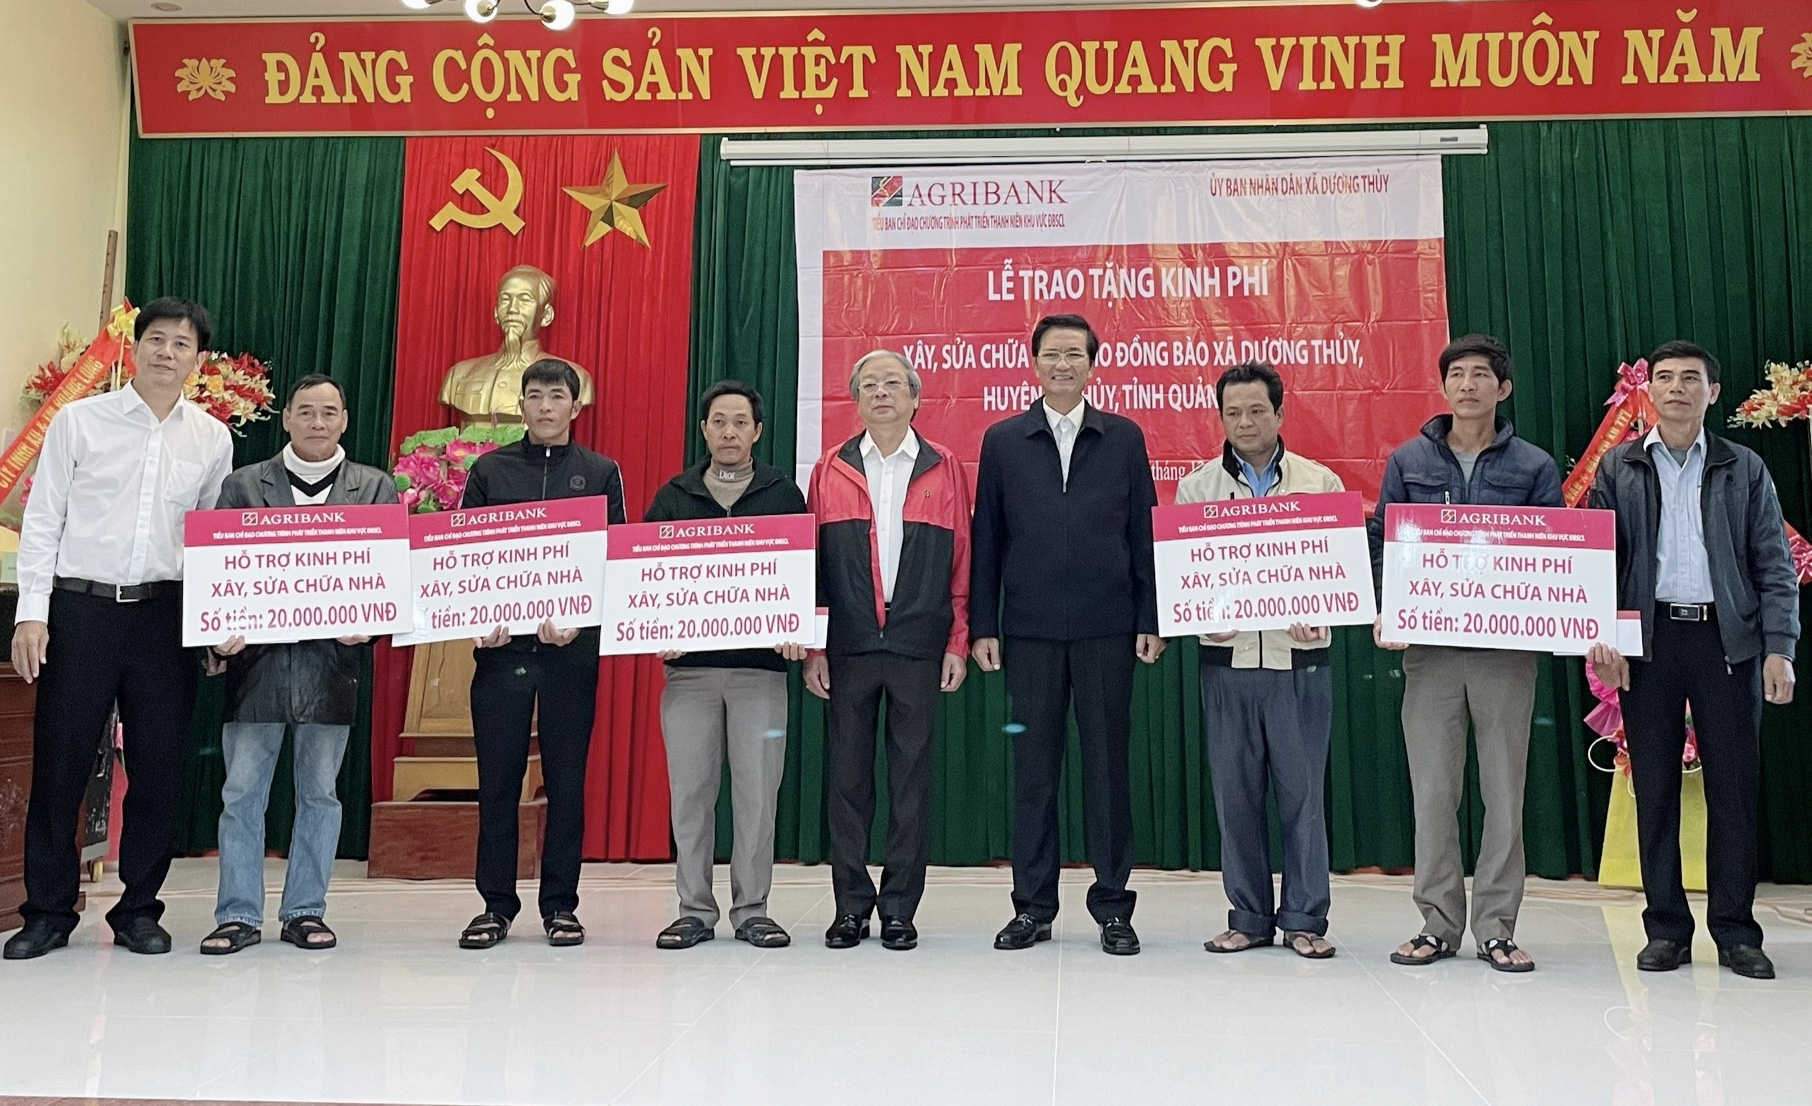 Ông Trần Ngọc Hải, Trưởng Tiểu ban Chỉ đạo chương trình PTTN khu vực ĐBSCL trao tiền hỗ trợ cho các hộ gia đình tại xã Dương Thuỷ, huyện Lệ Thuỷ